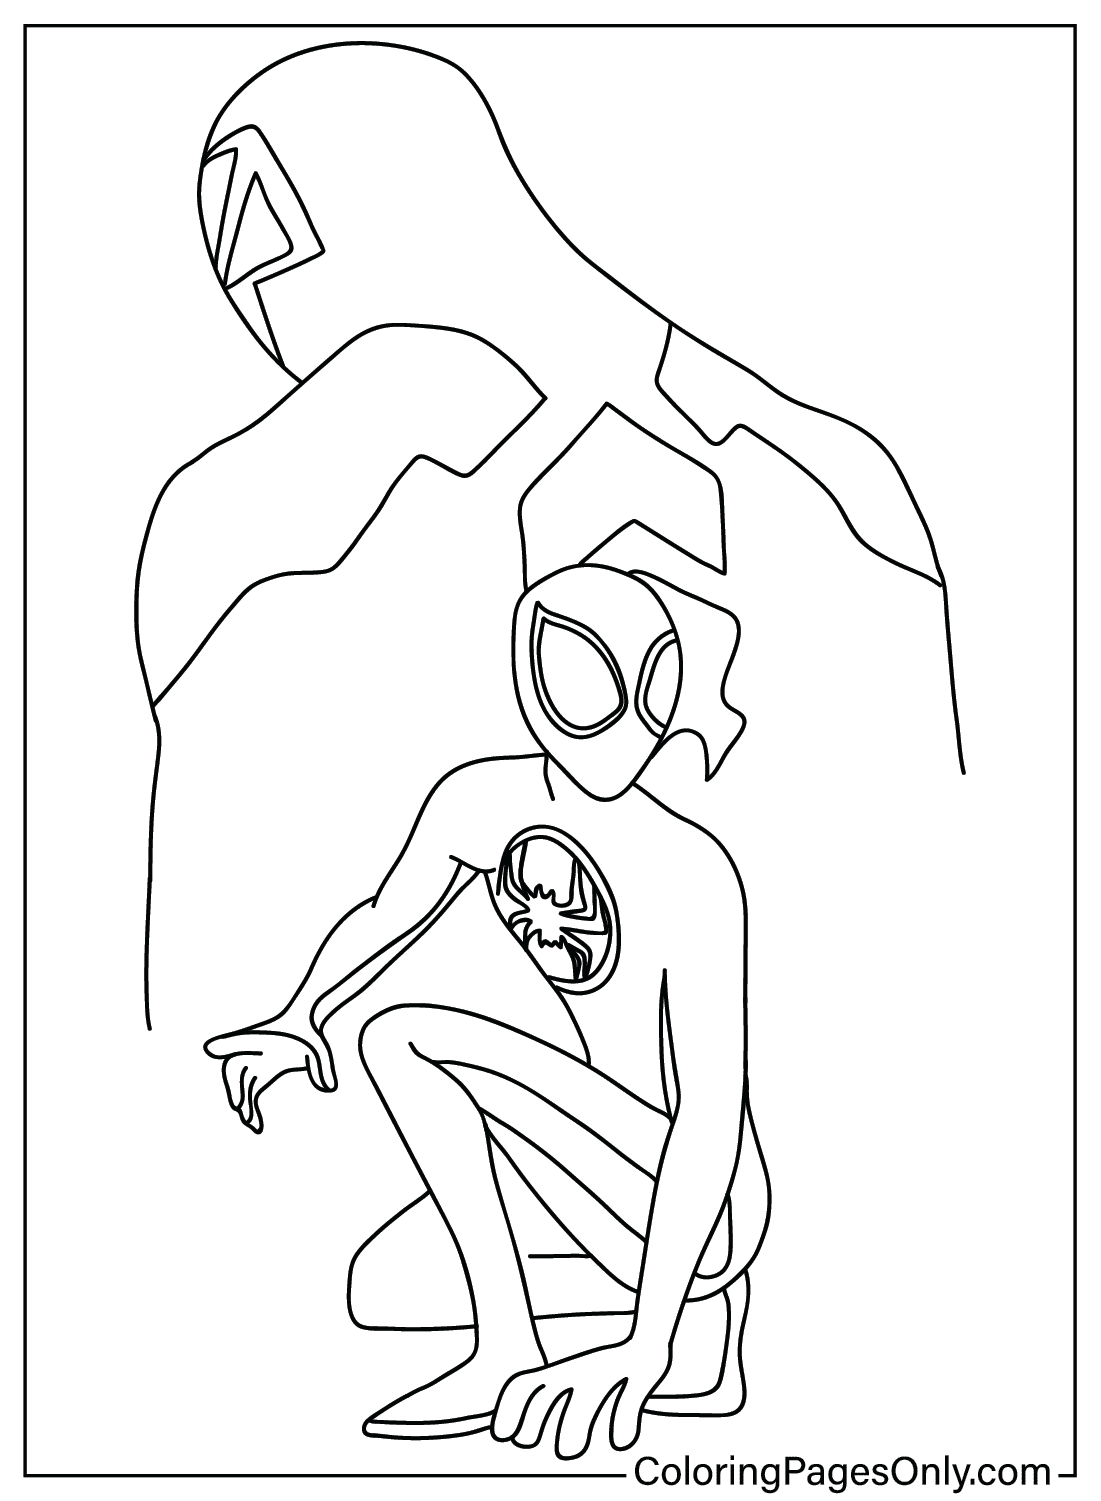 Человек-паук через паука, чтобы раскрасить